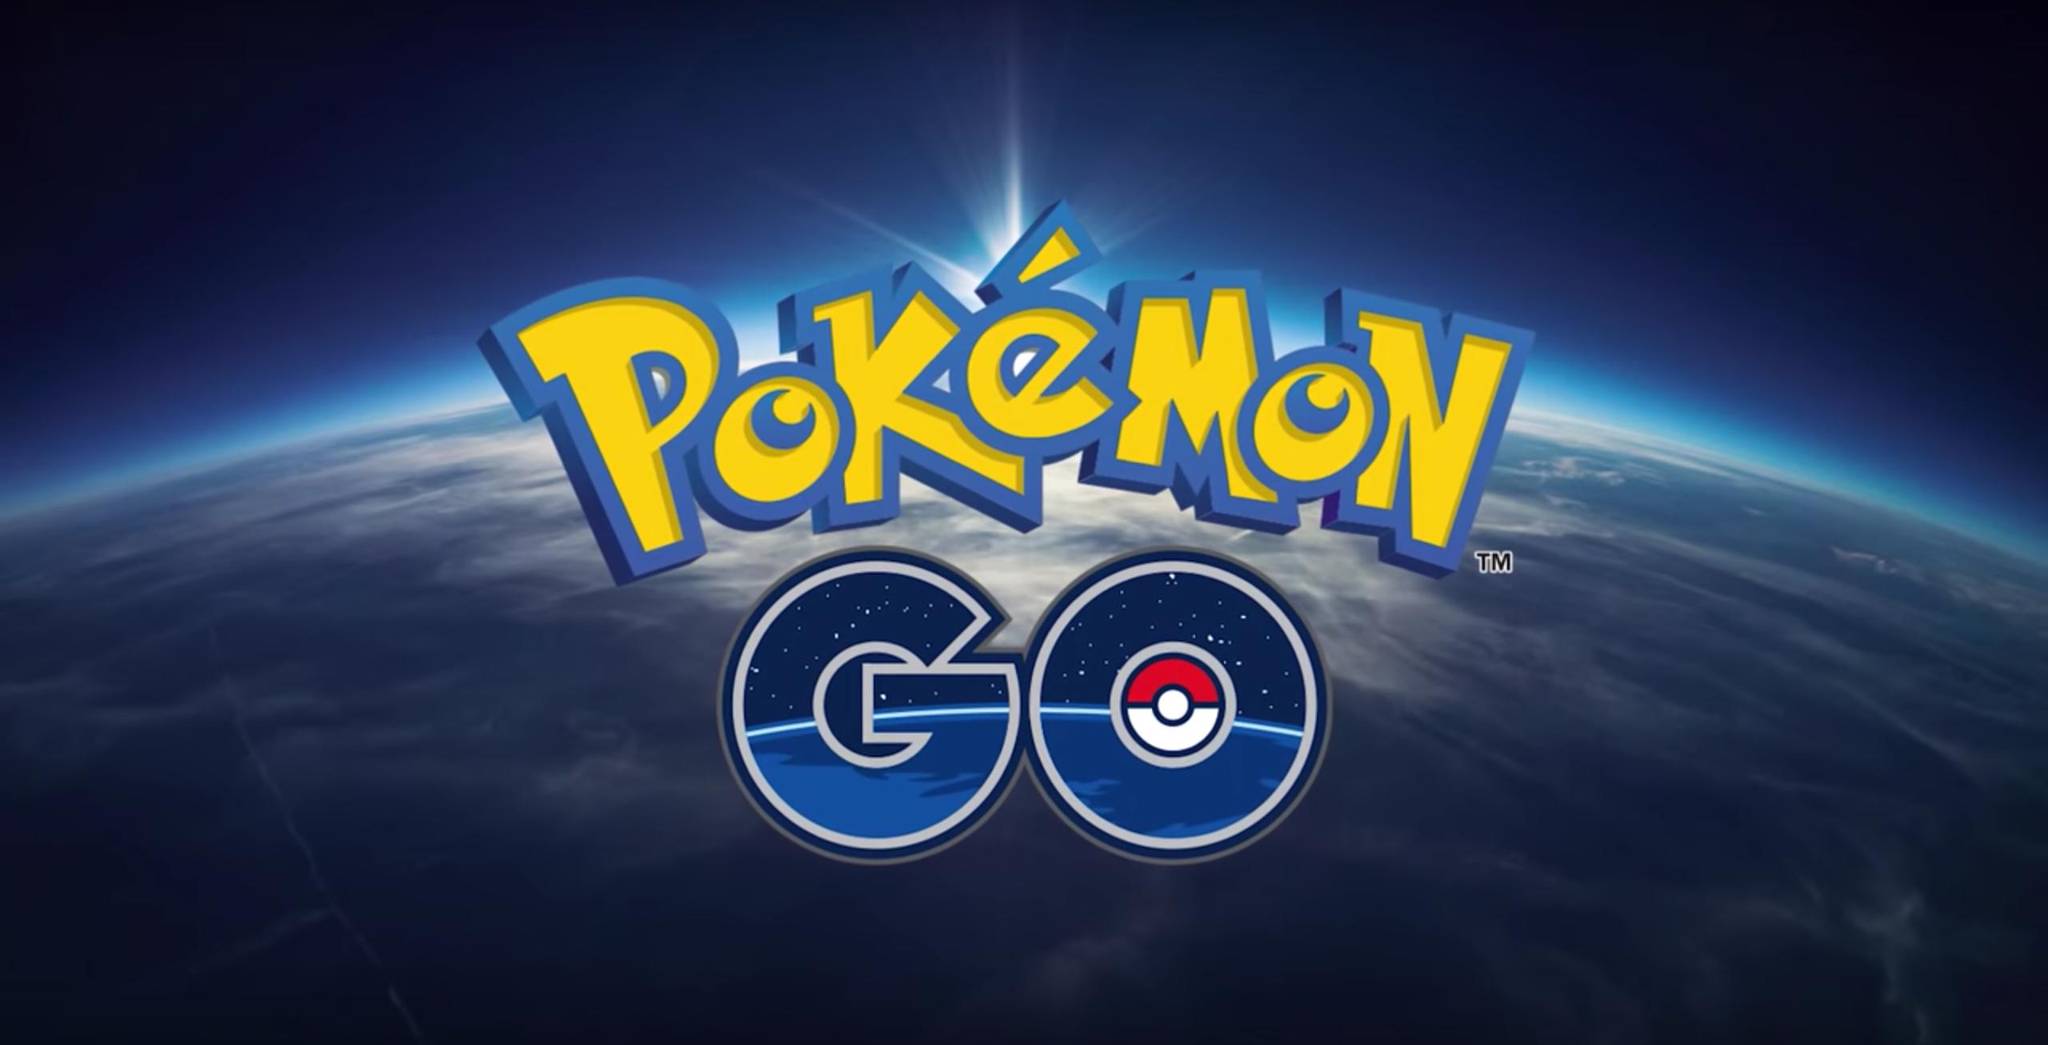 Pokémon GO: Temporada de Alola é anunciada com lendário da região, pokémon